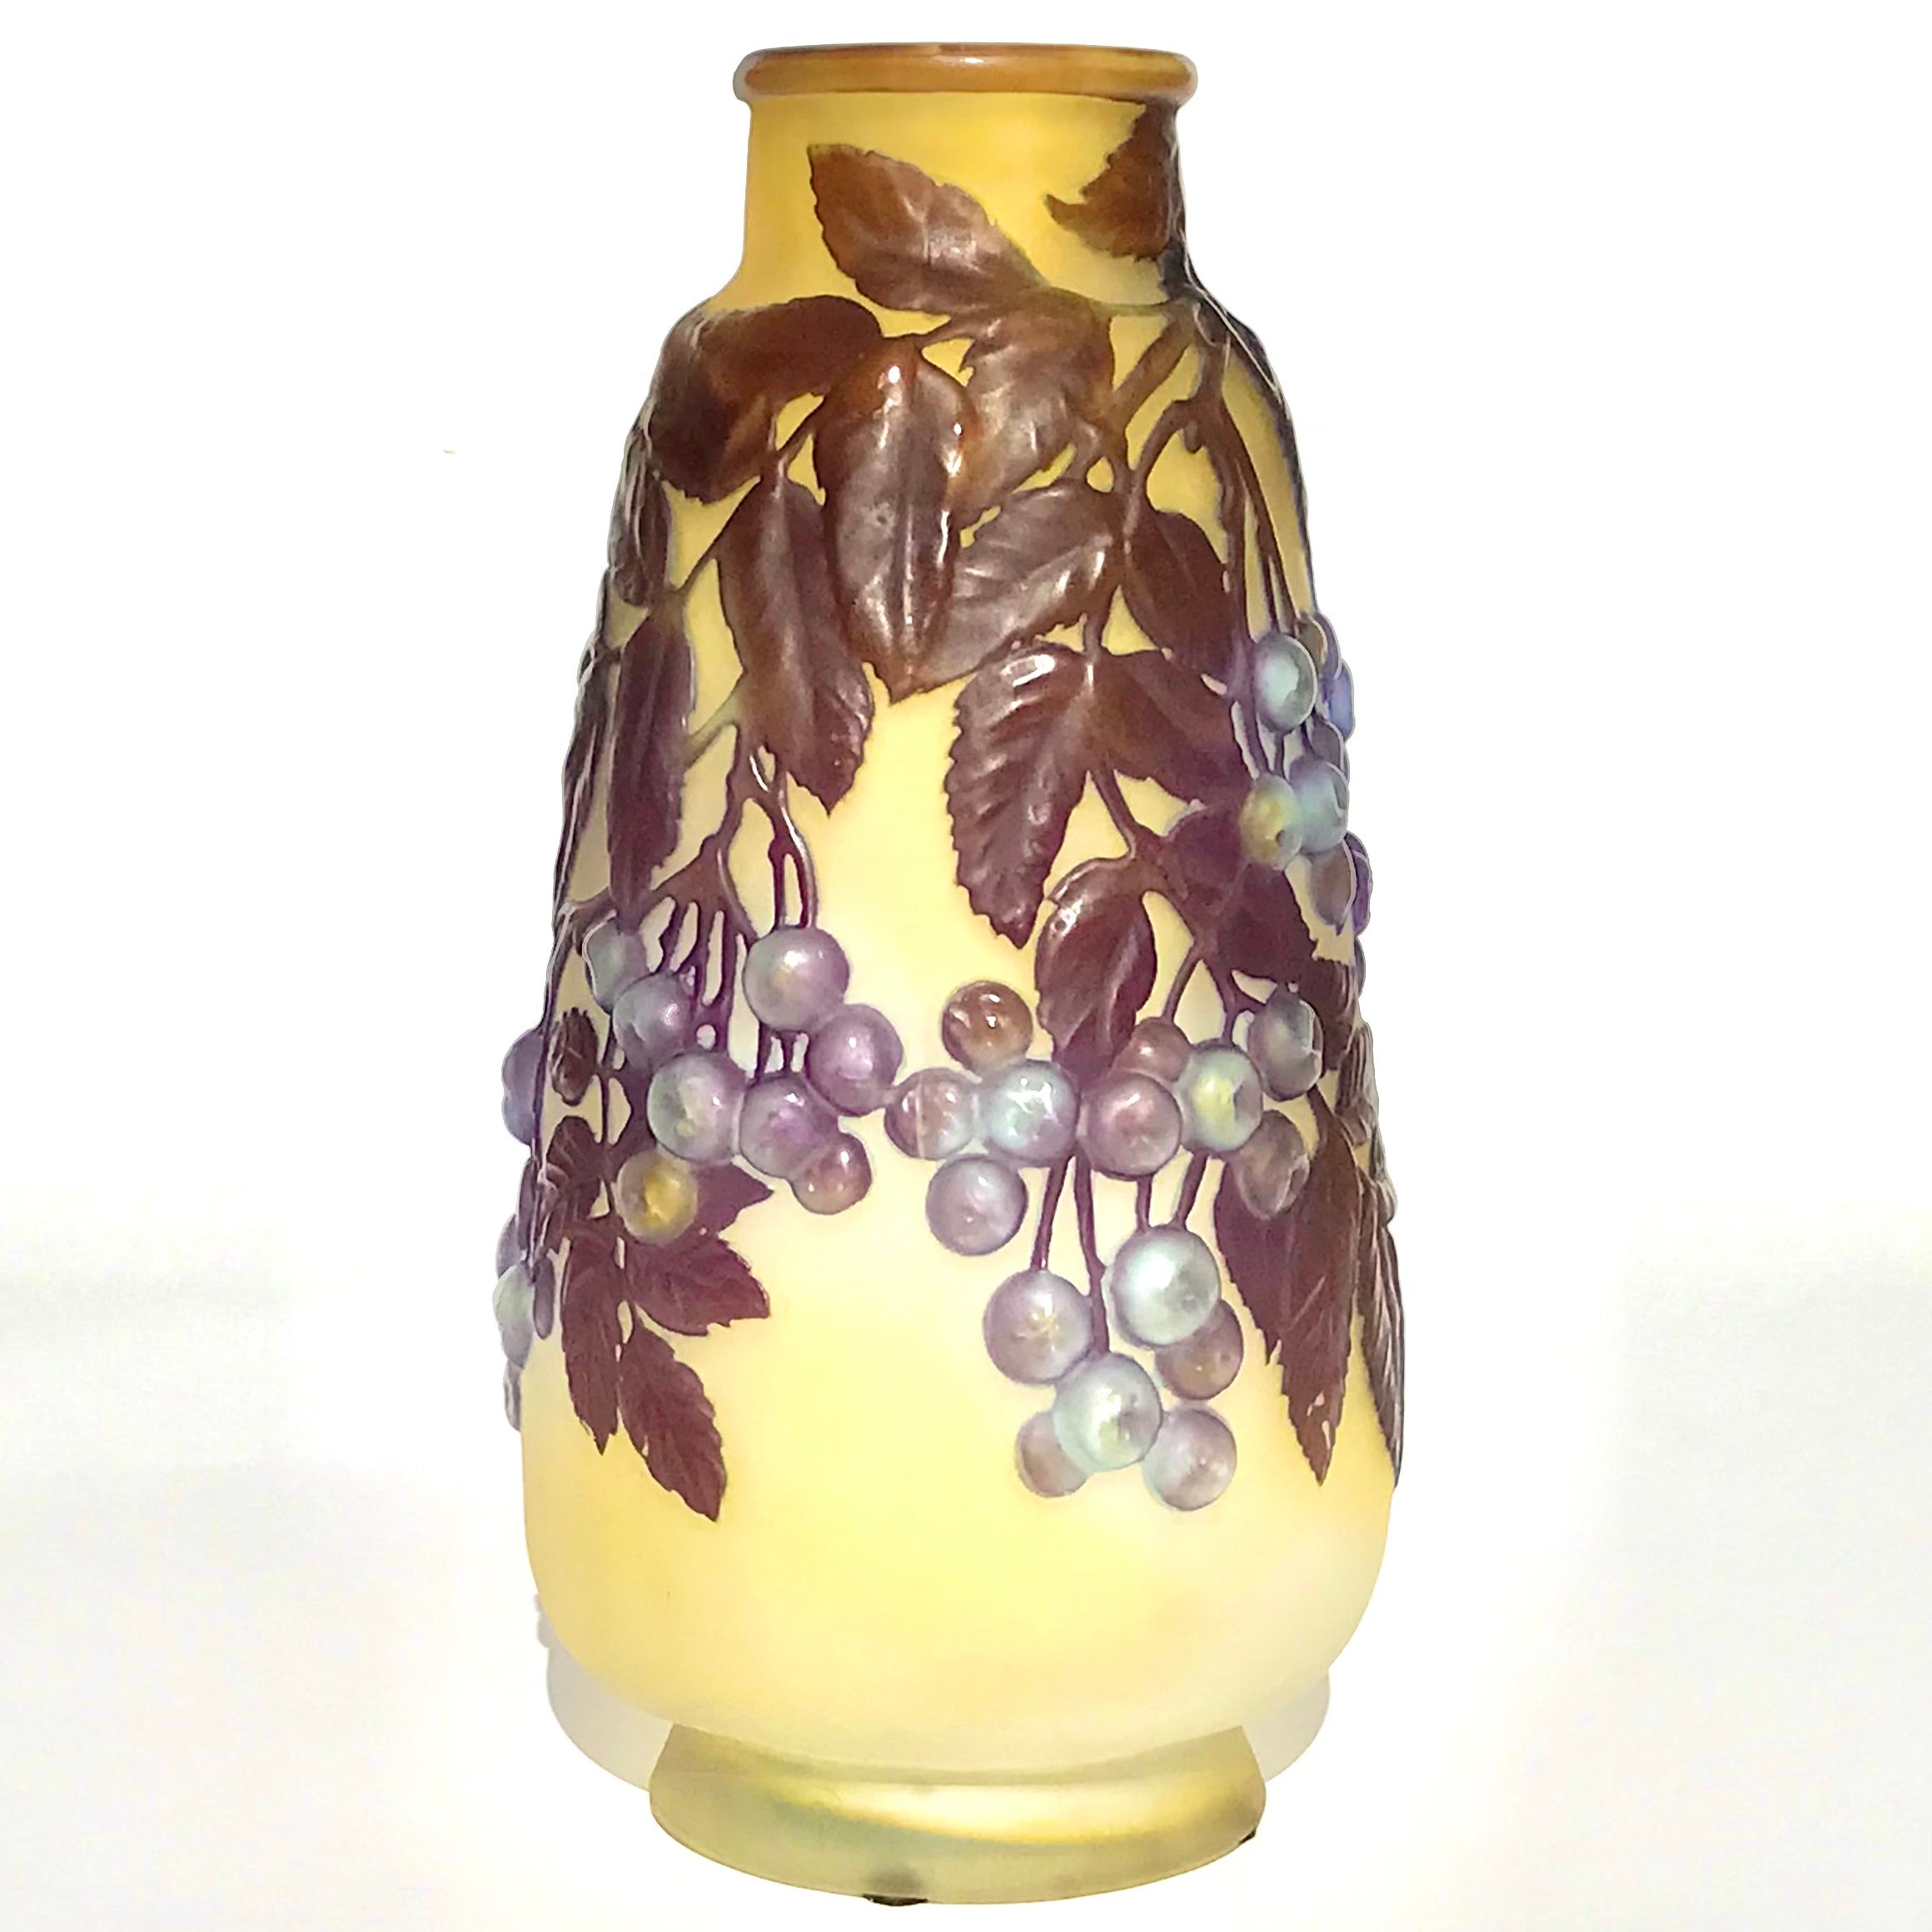 Emile Galle (Français 1846 -1904) Vase Soufflé Camée

Grand vase à baies en verre soufflé Emile Gallé, vers 1910 Fond jaune et crème avec baies bleues soufflées sur des branches avec des feuilles violettes gravées à l'acide en camée. Un vase d'une